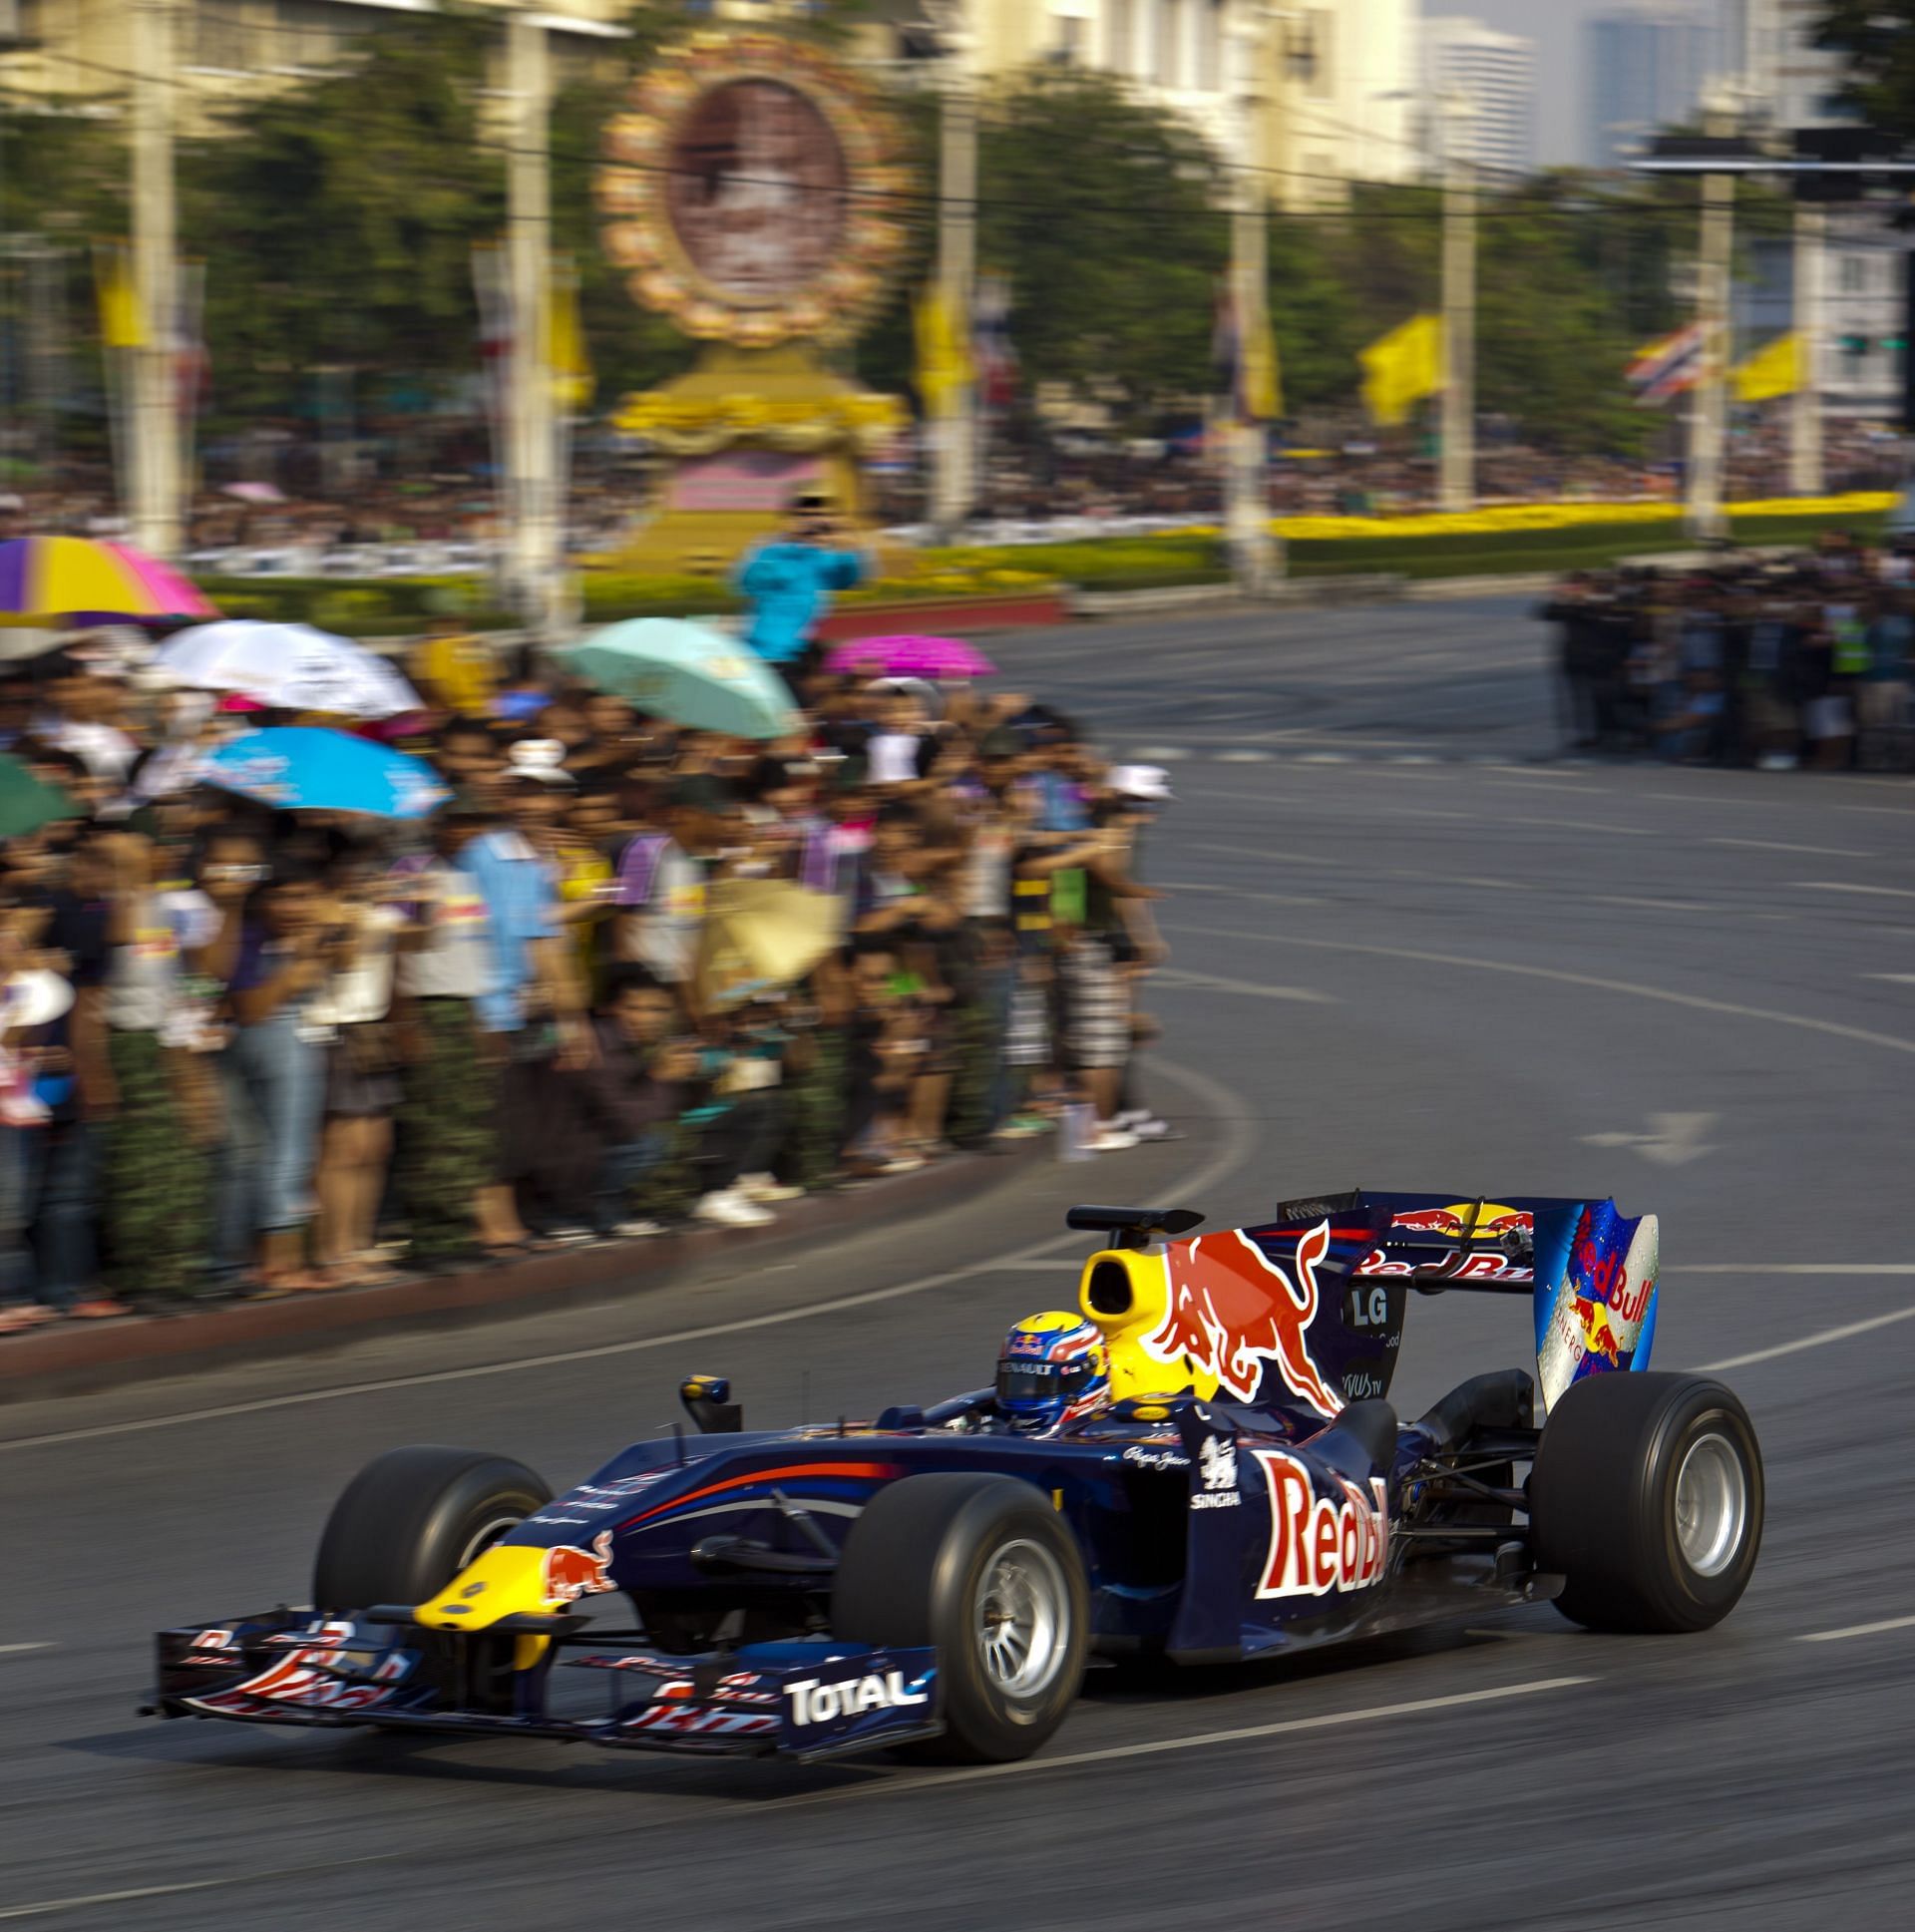 Red Bull Racing 2010 F1 car